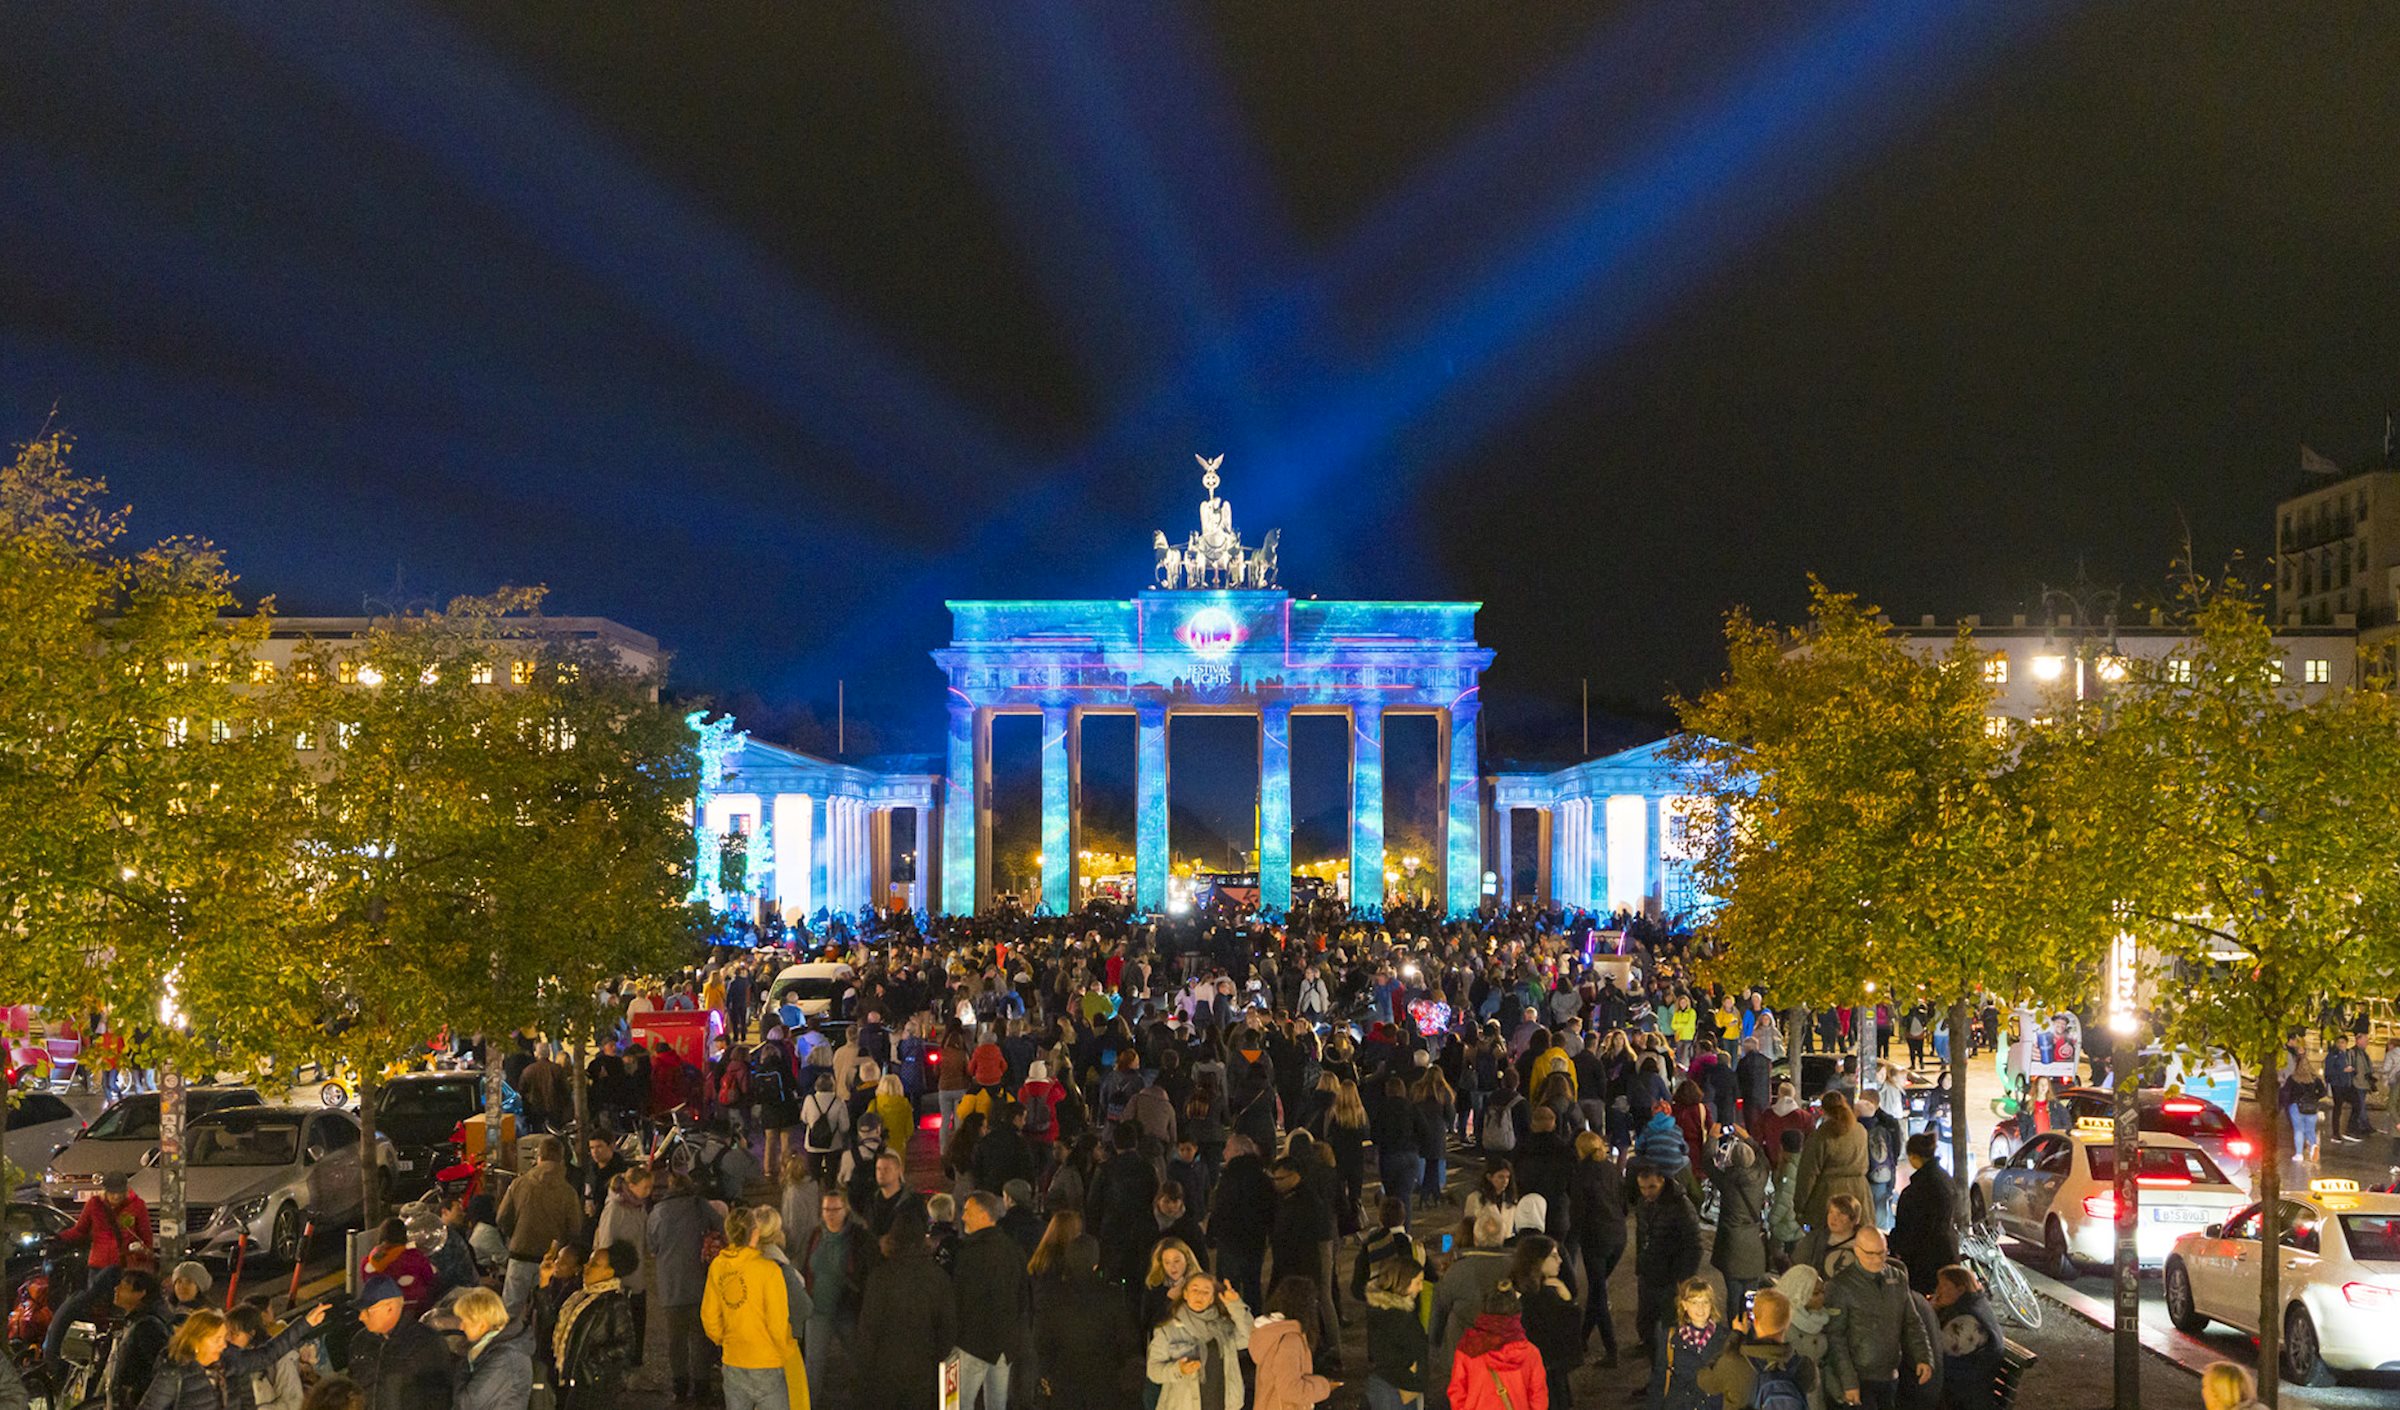 PRG war einer der Technologiepartner und wurde mit der Installation von Medien- und Projektionstechnik an acht verschiedenen Standorten beauftragt, darunter das Brandenburger Tor und der Berliner Fernsehturm beim Festival of Lights.